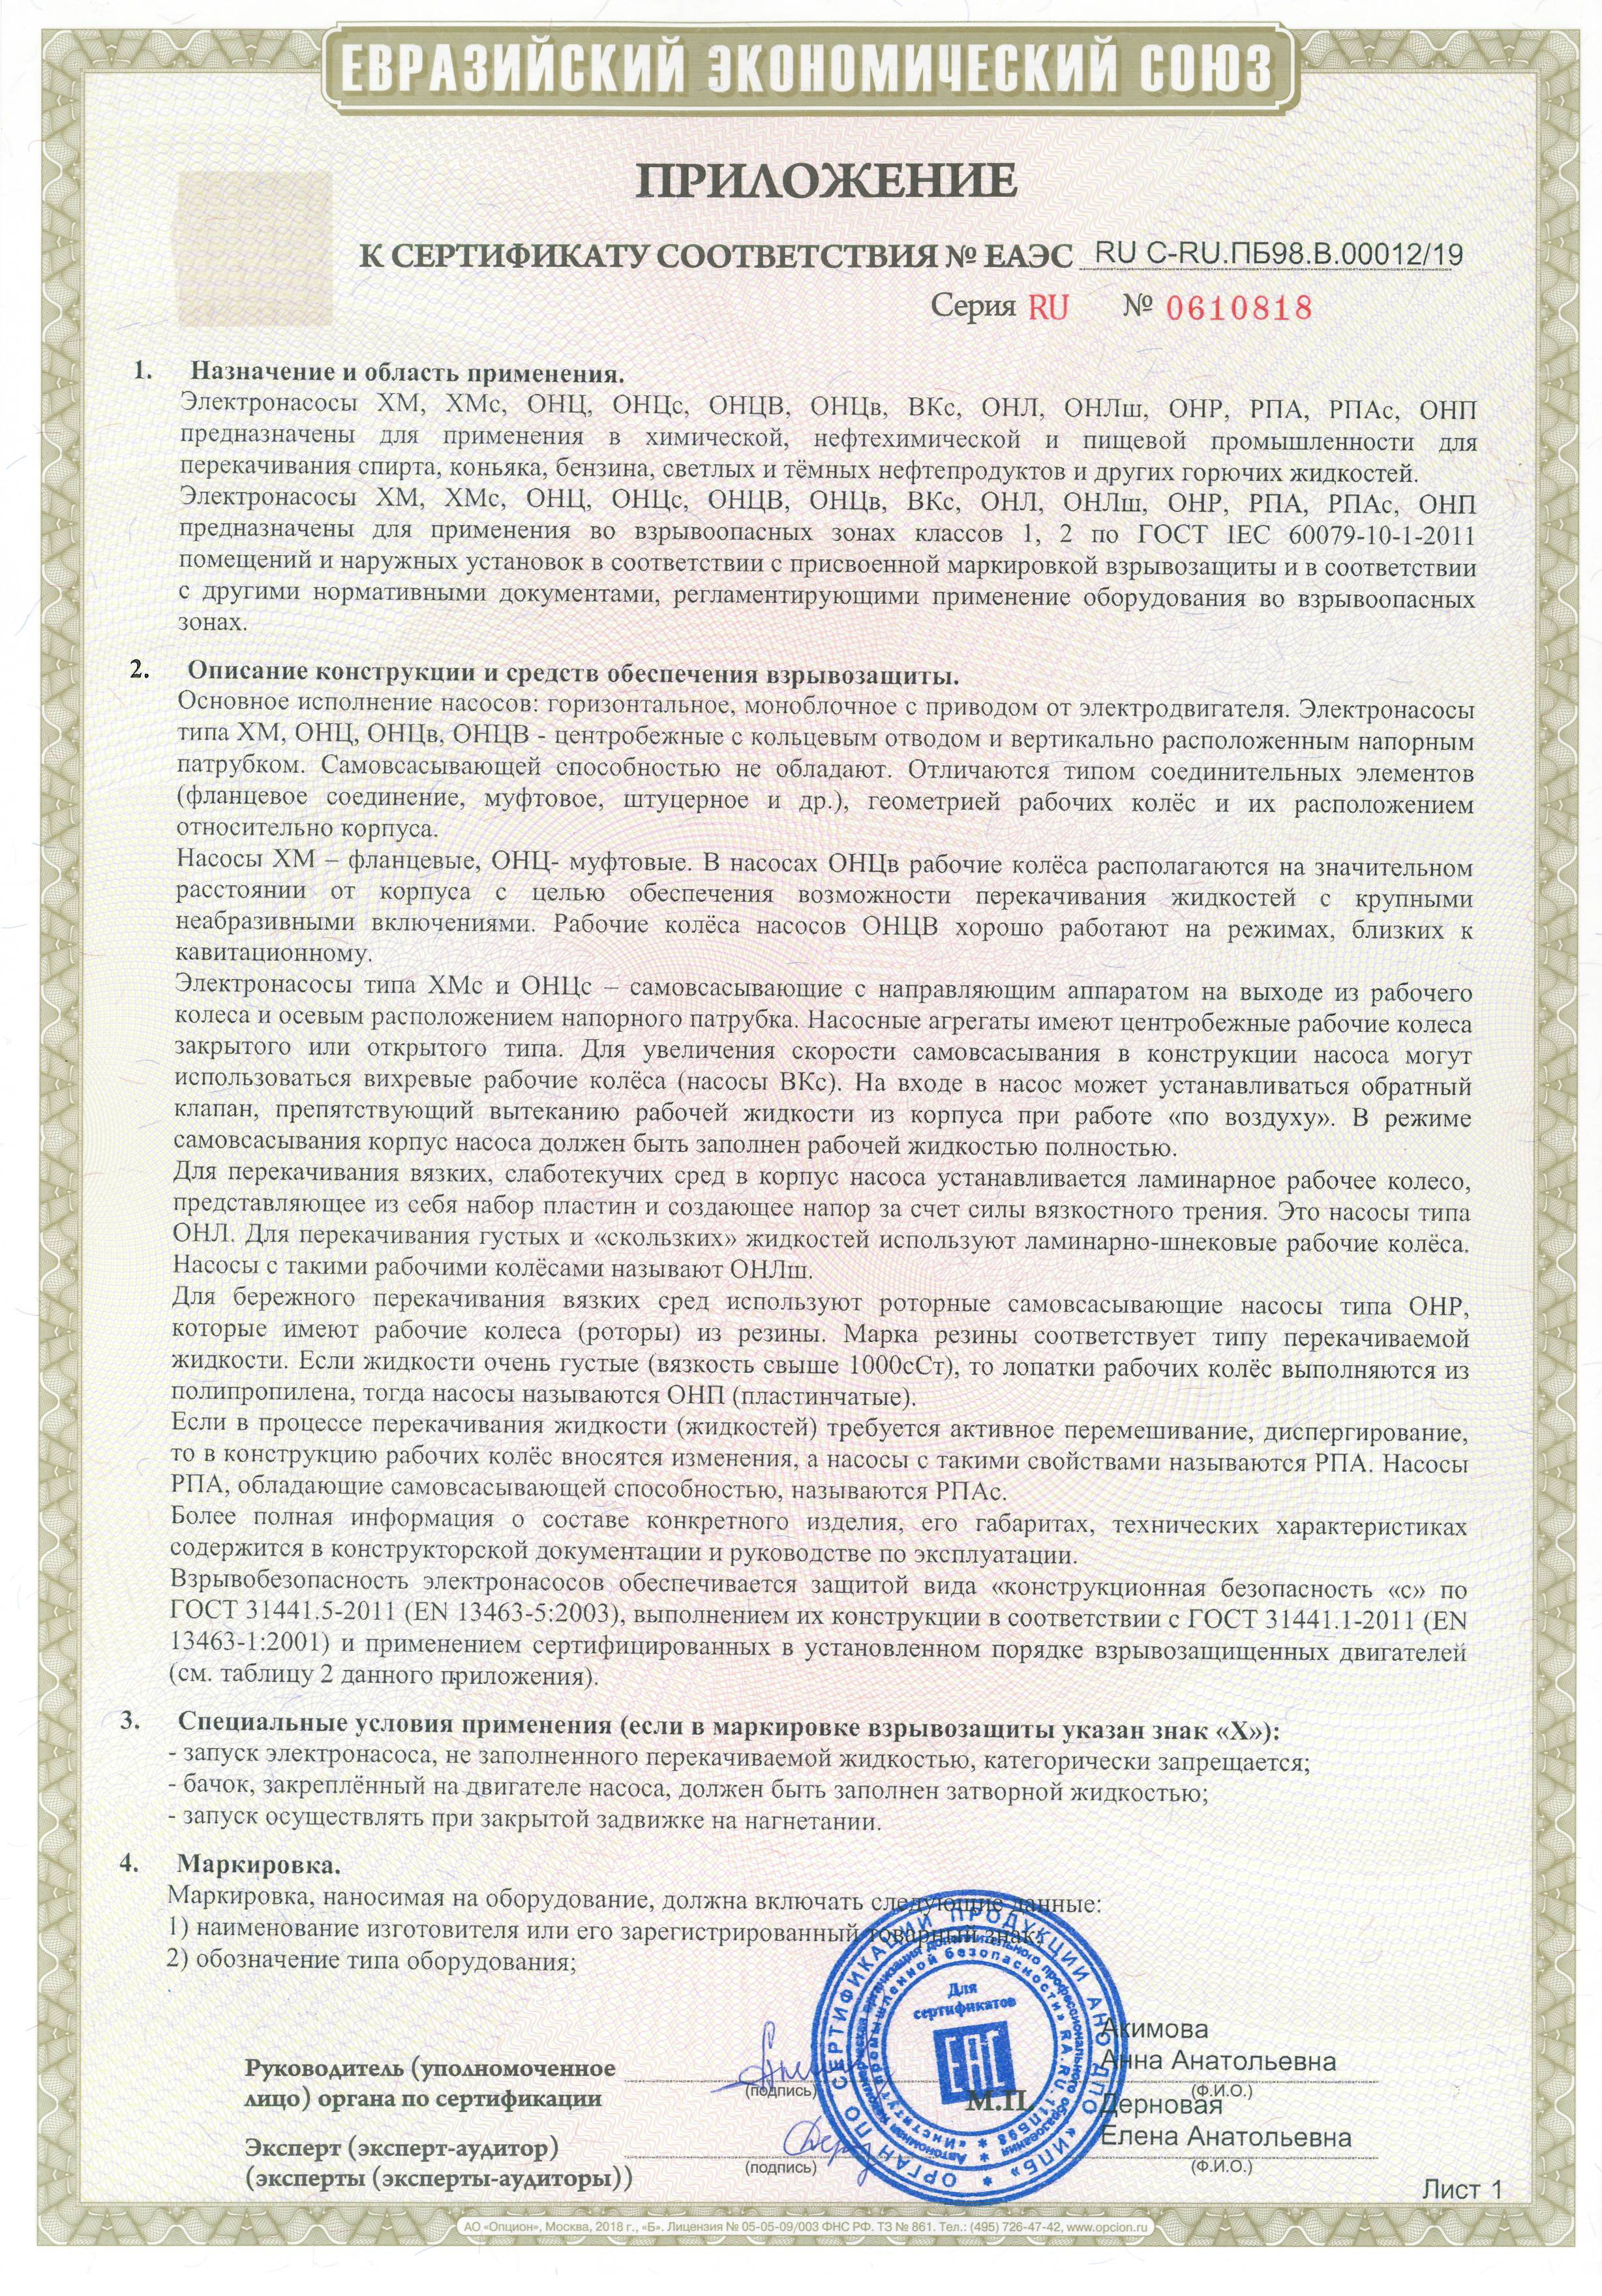 Сертификат соответсвия Таможенного союза1